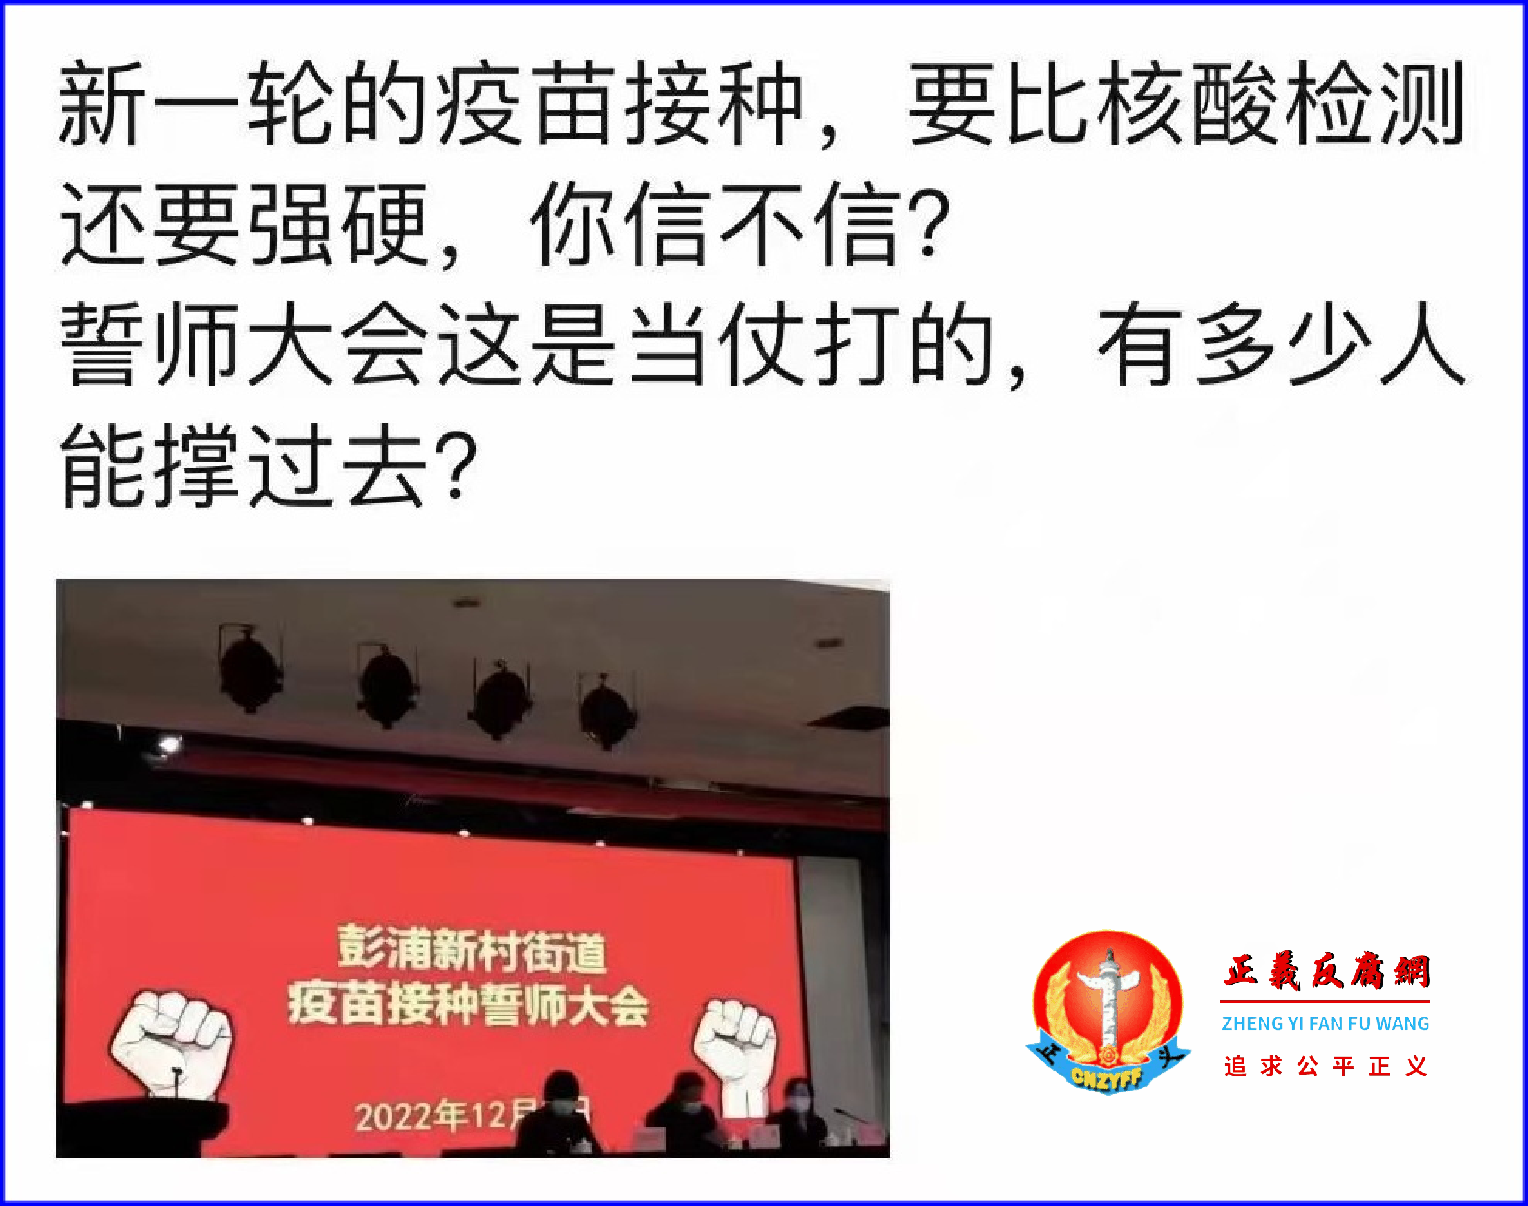 上海静安区彭浦新村街道召开疫苗接种誓师大会，被指搞运动式接种。.png